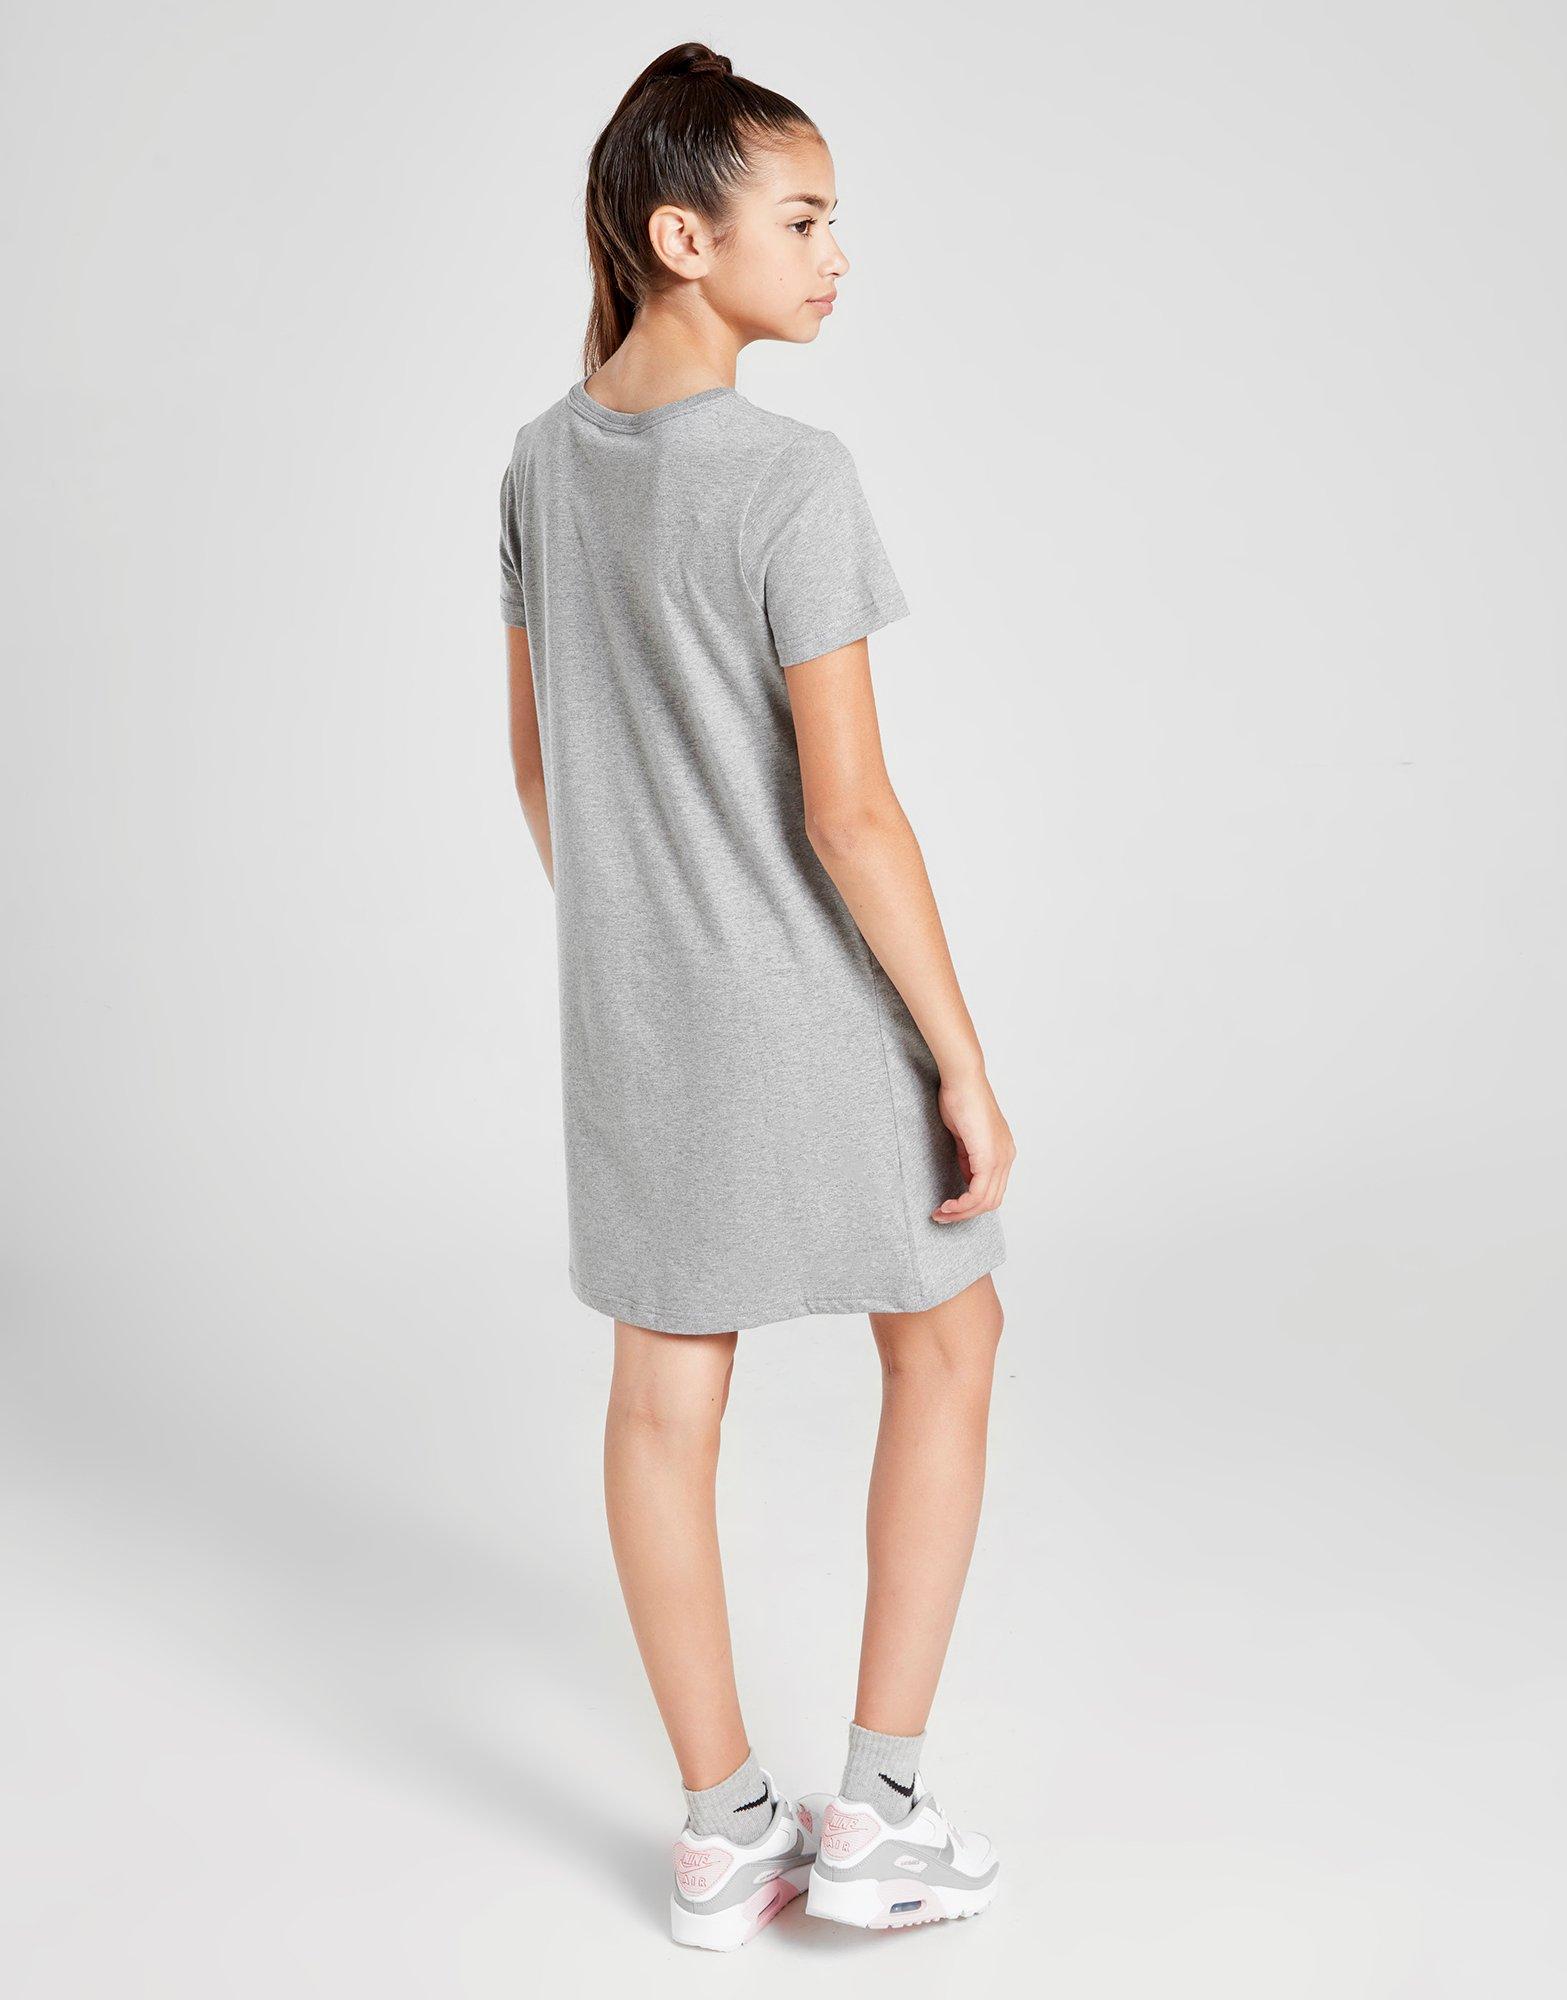 Grey Nike Girls' Futura T-Shirt Dress 